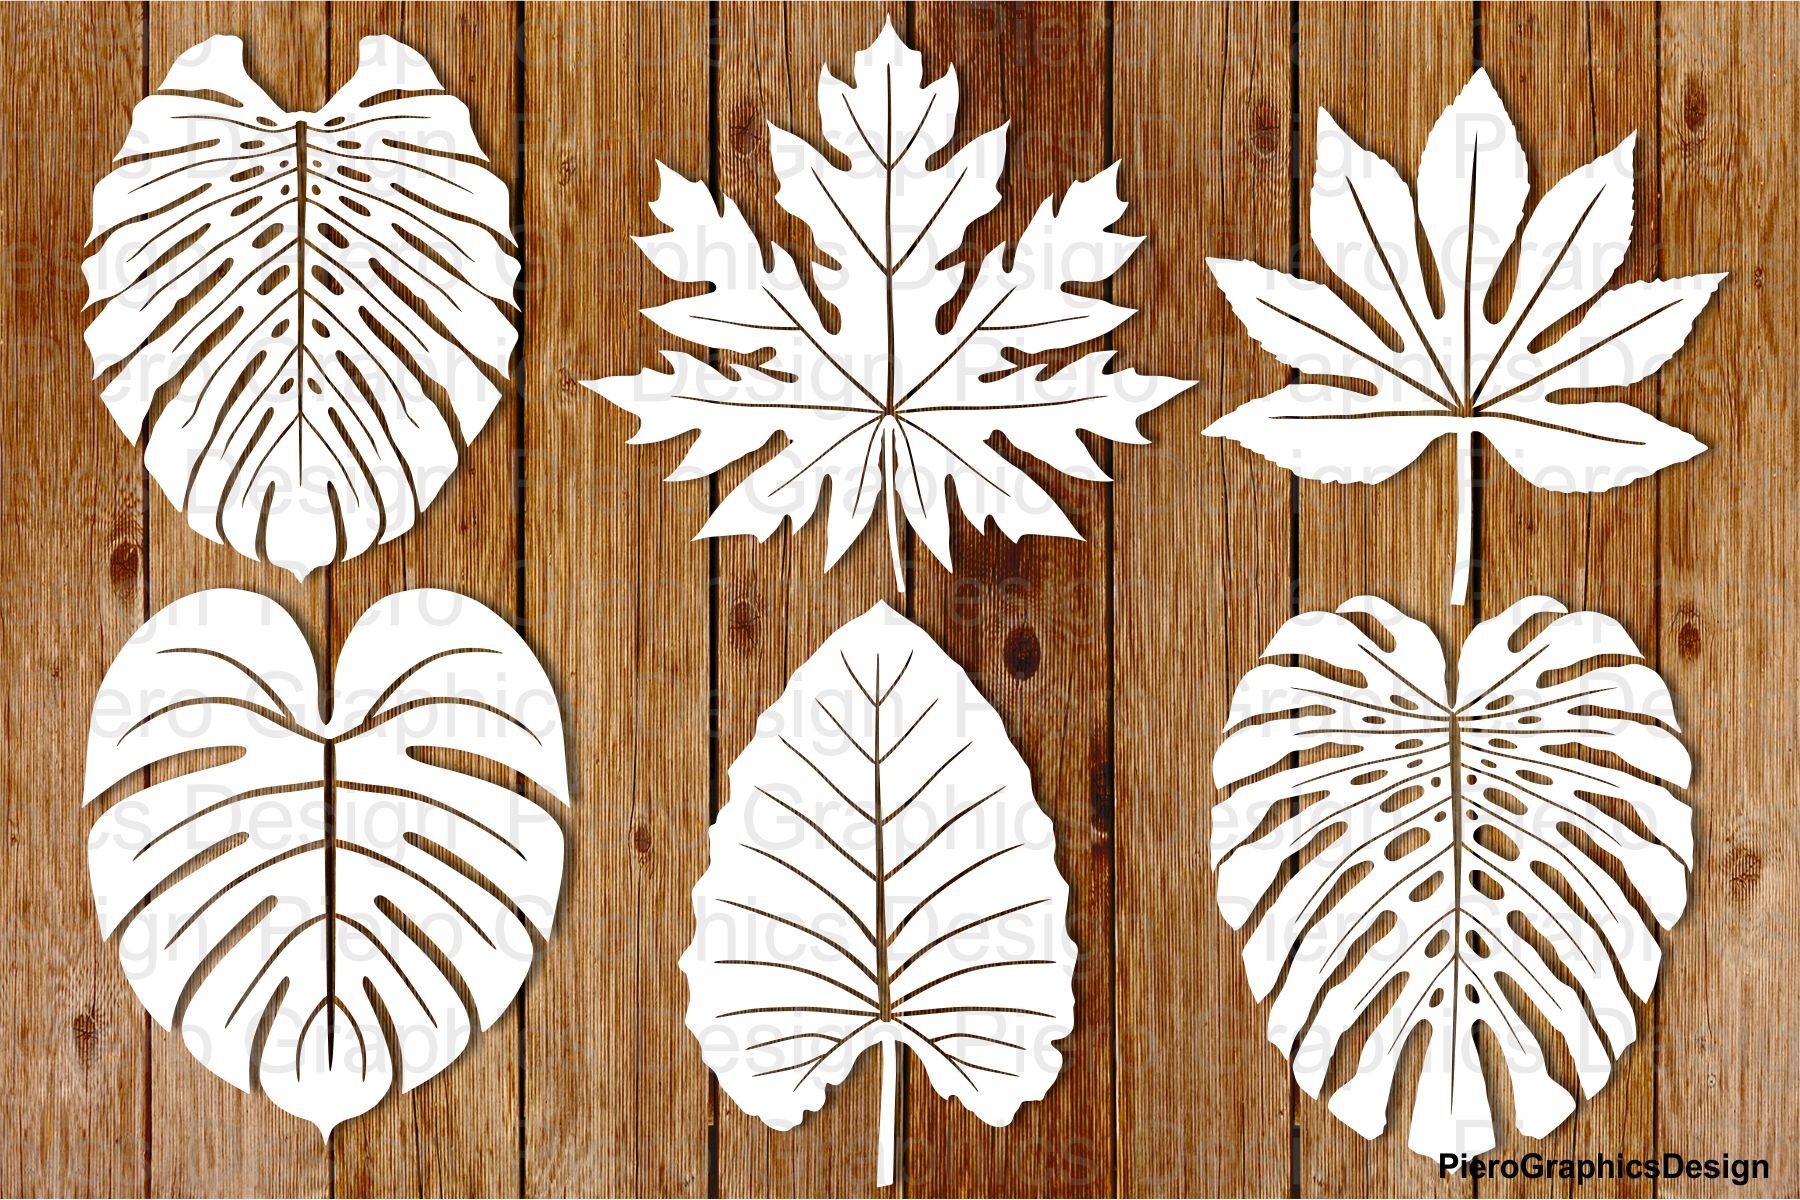 Leaf Stencil, Leaves Bundles Stencil, Tropical Leaves Stencil. By Doodle  Cloud Studio